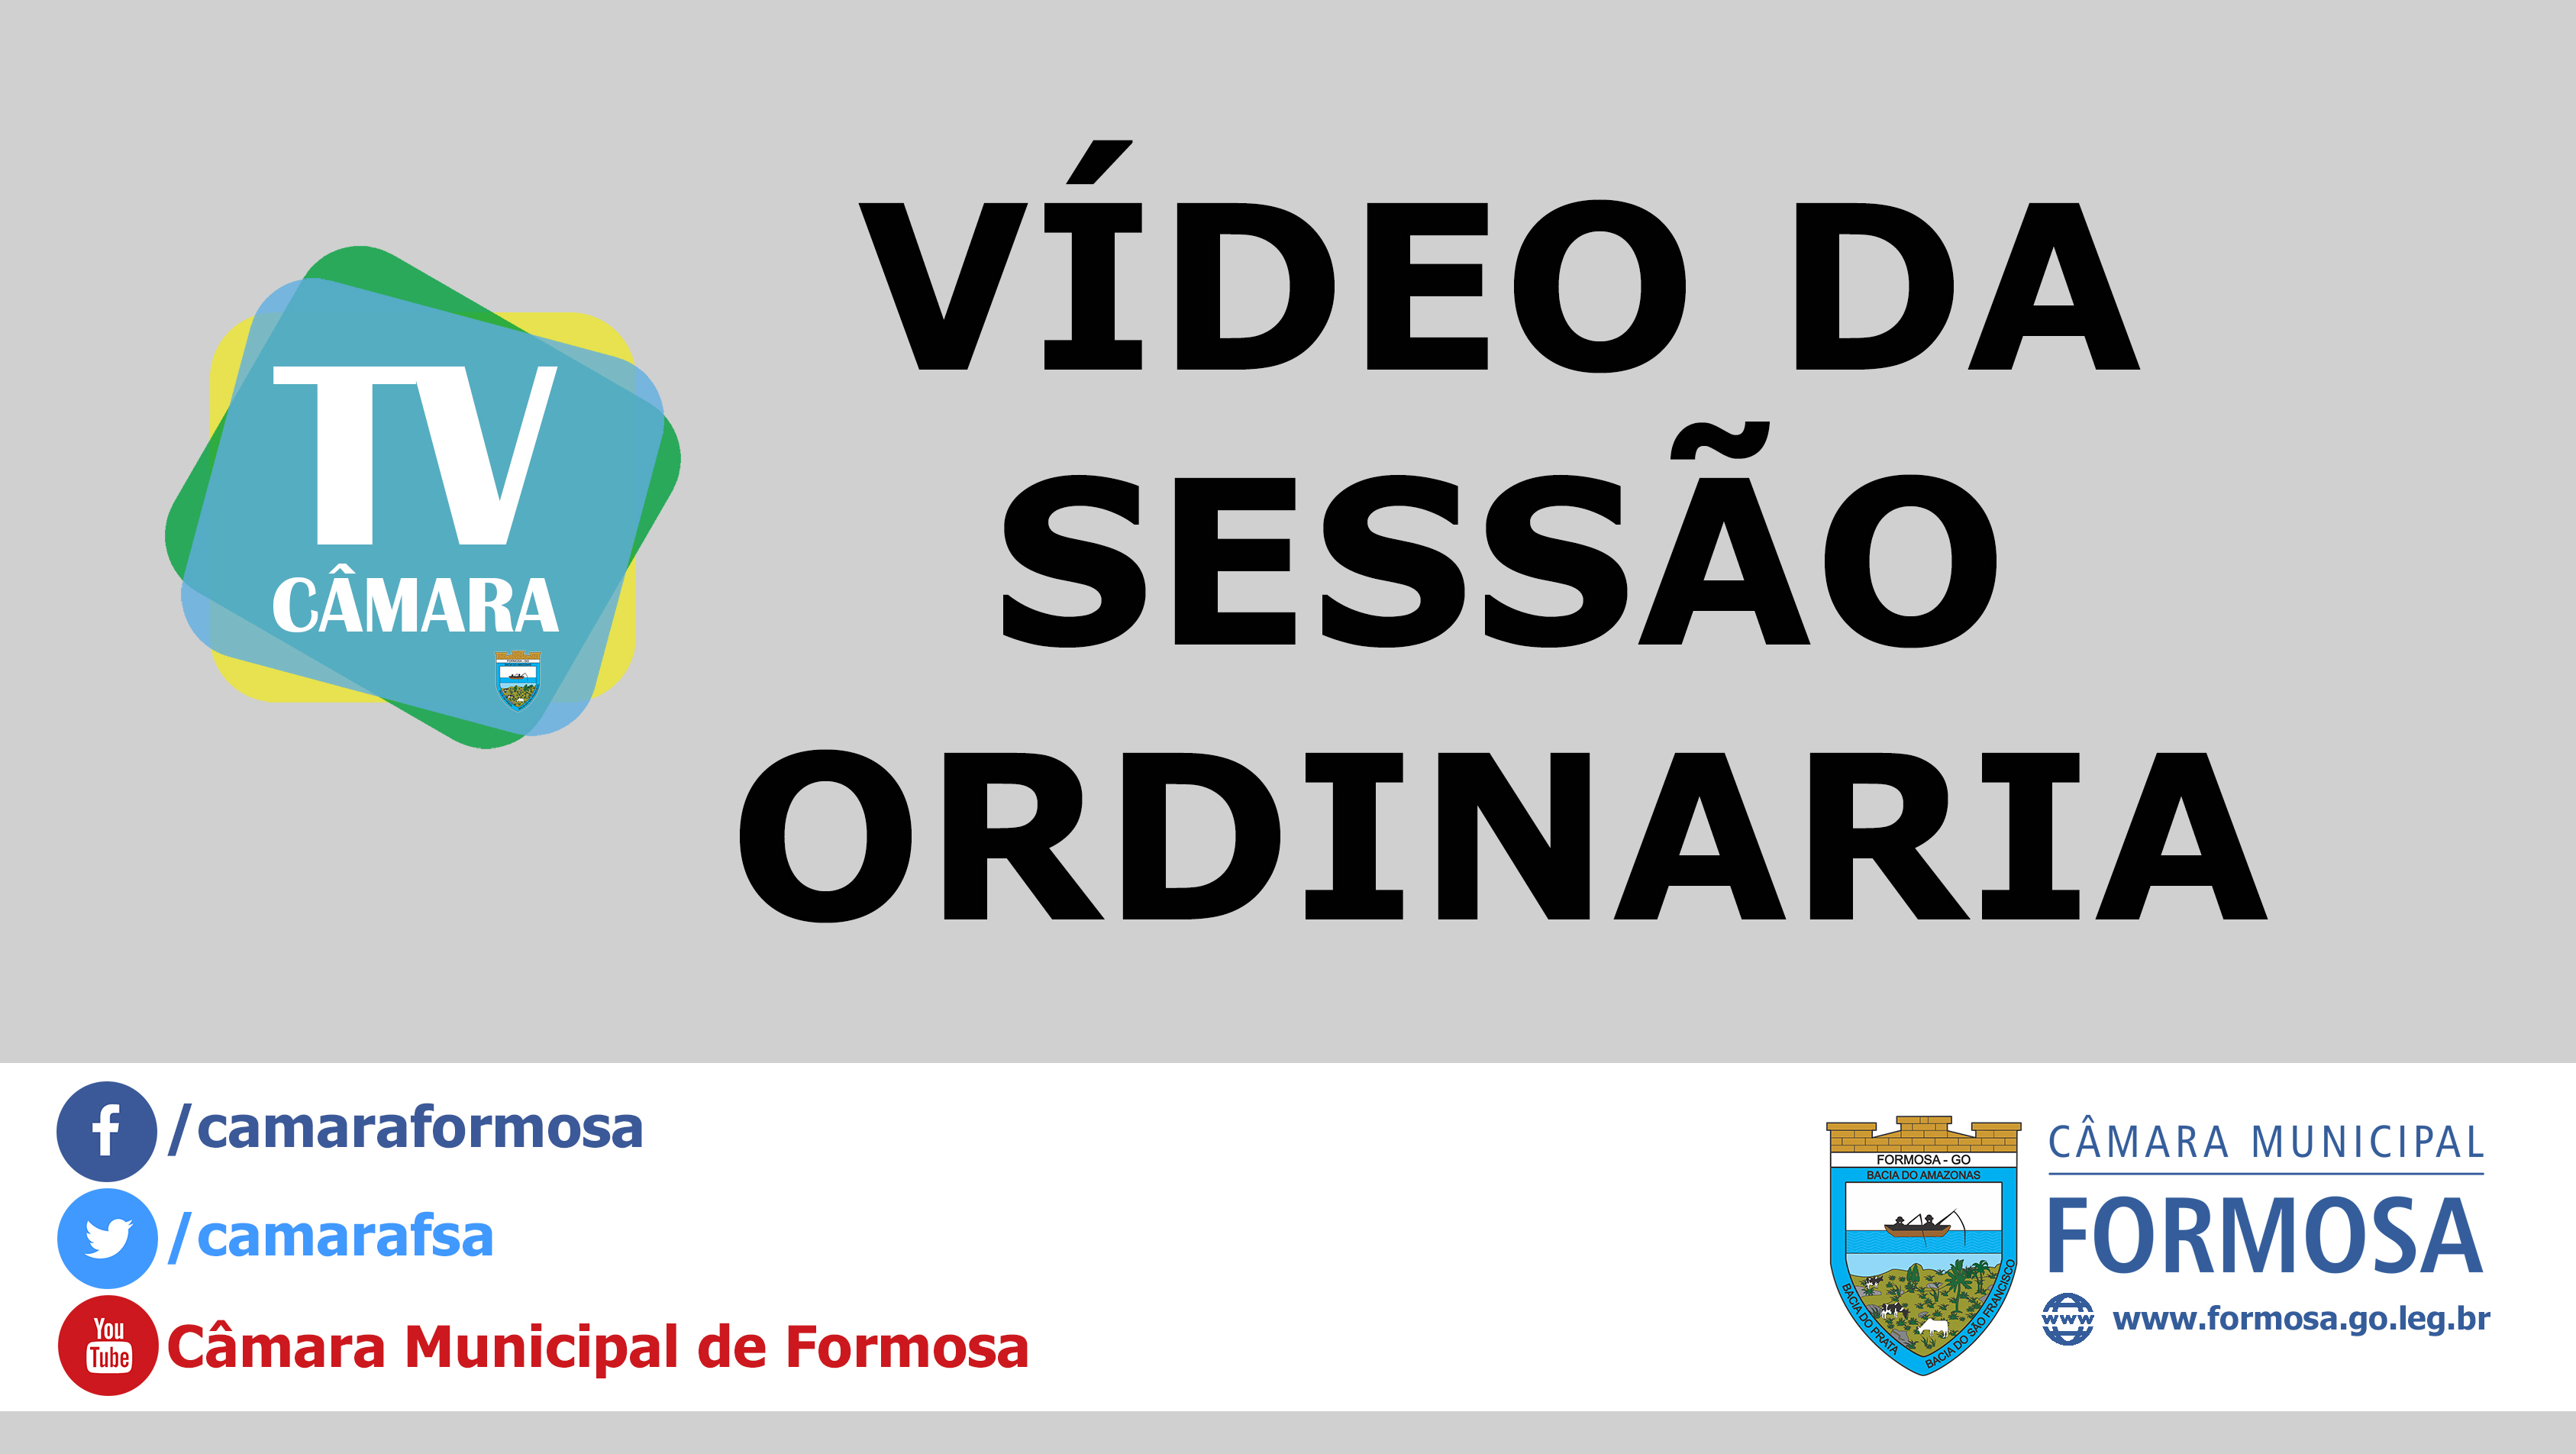 Vídeo das Sessões Ordinária e Extraordinárias do dia 16/08/18